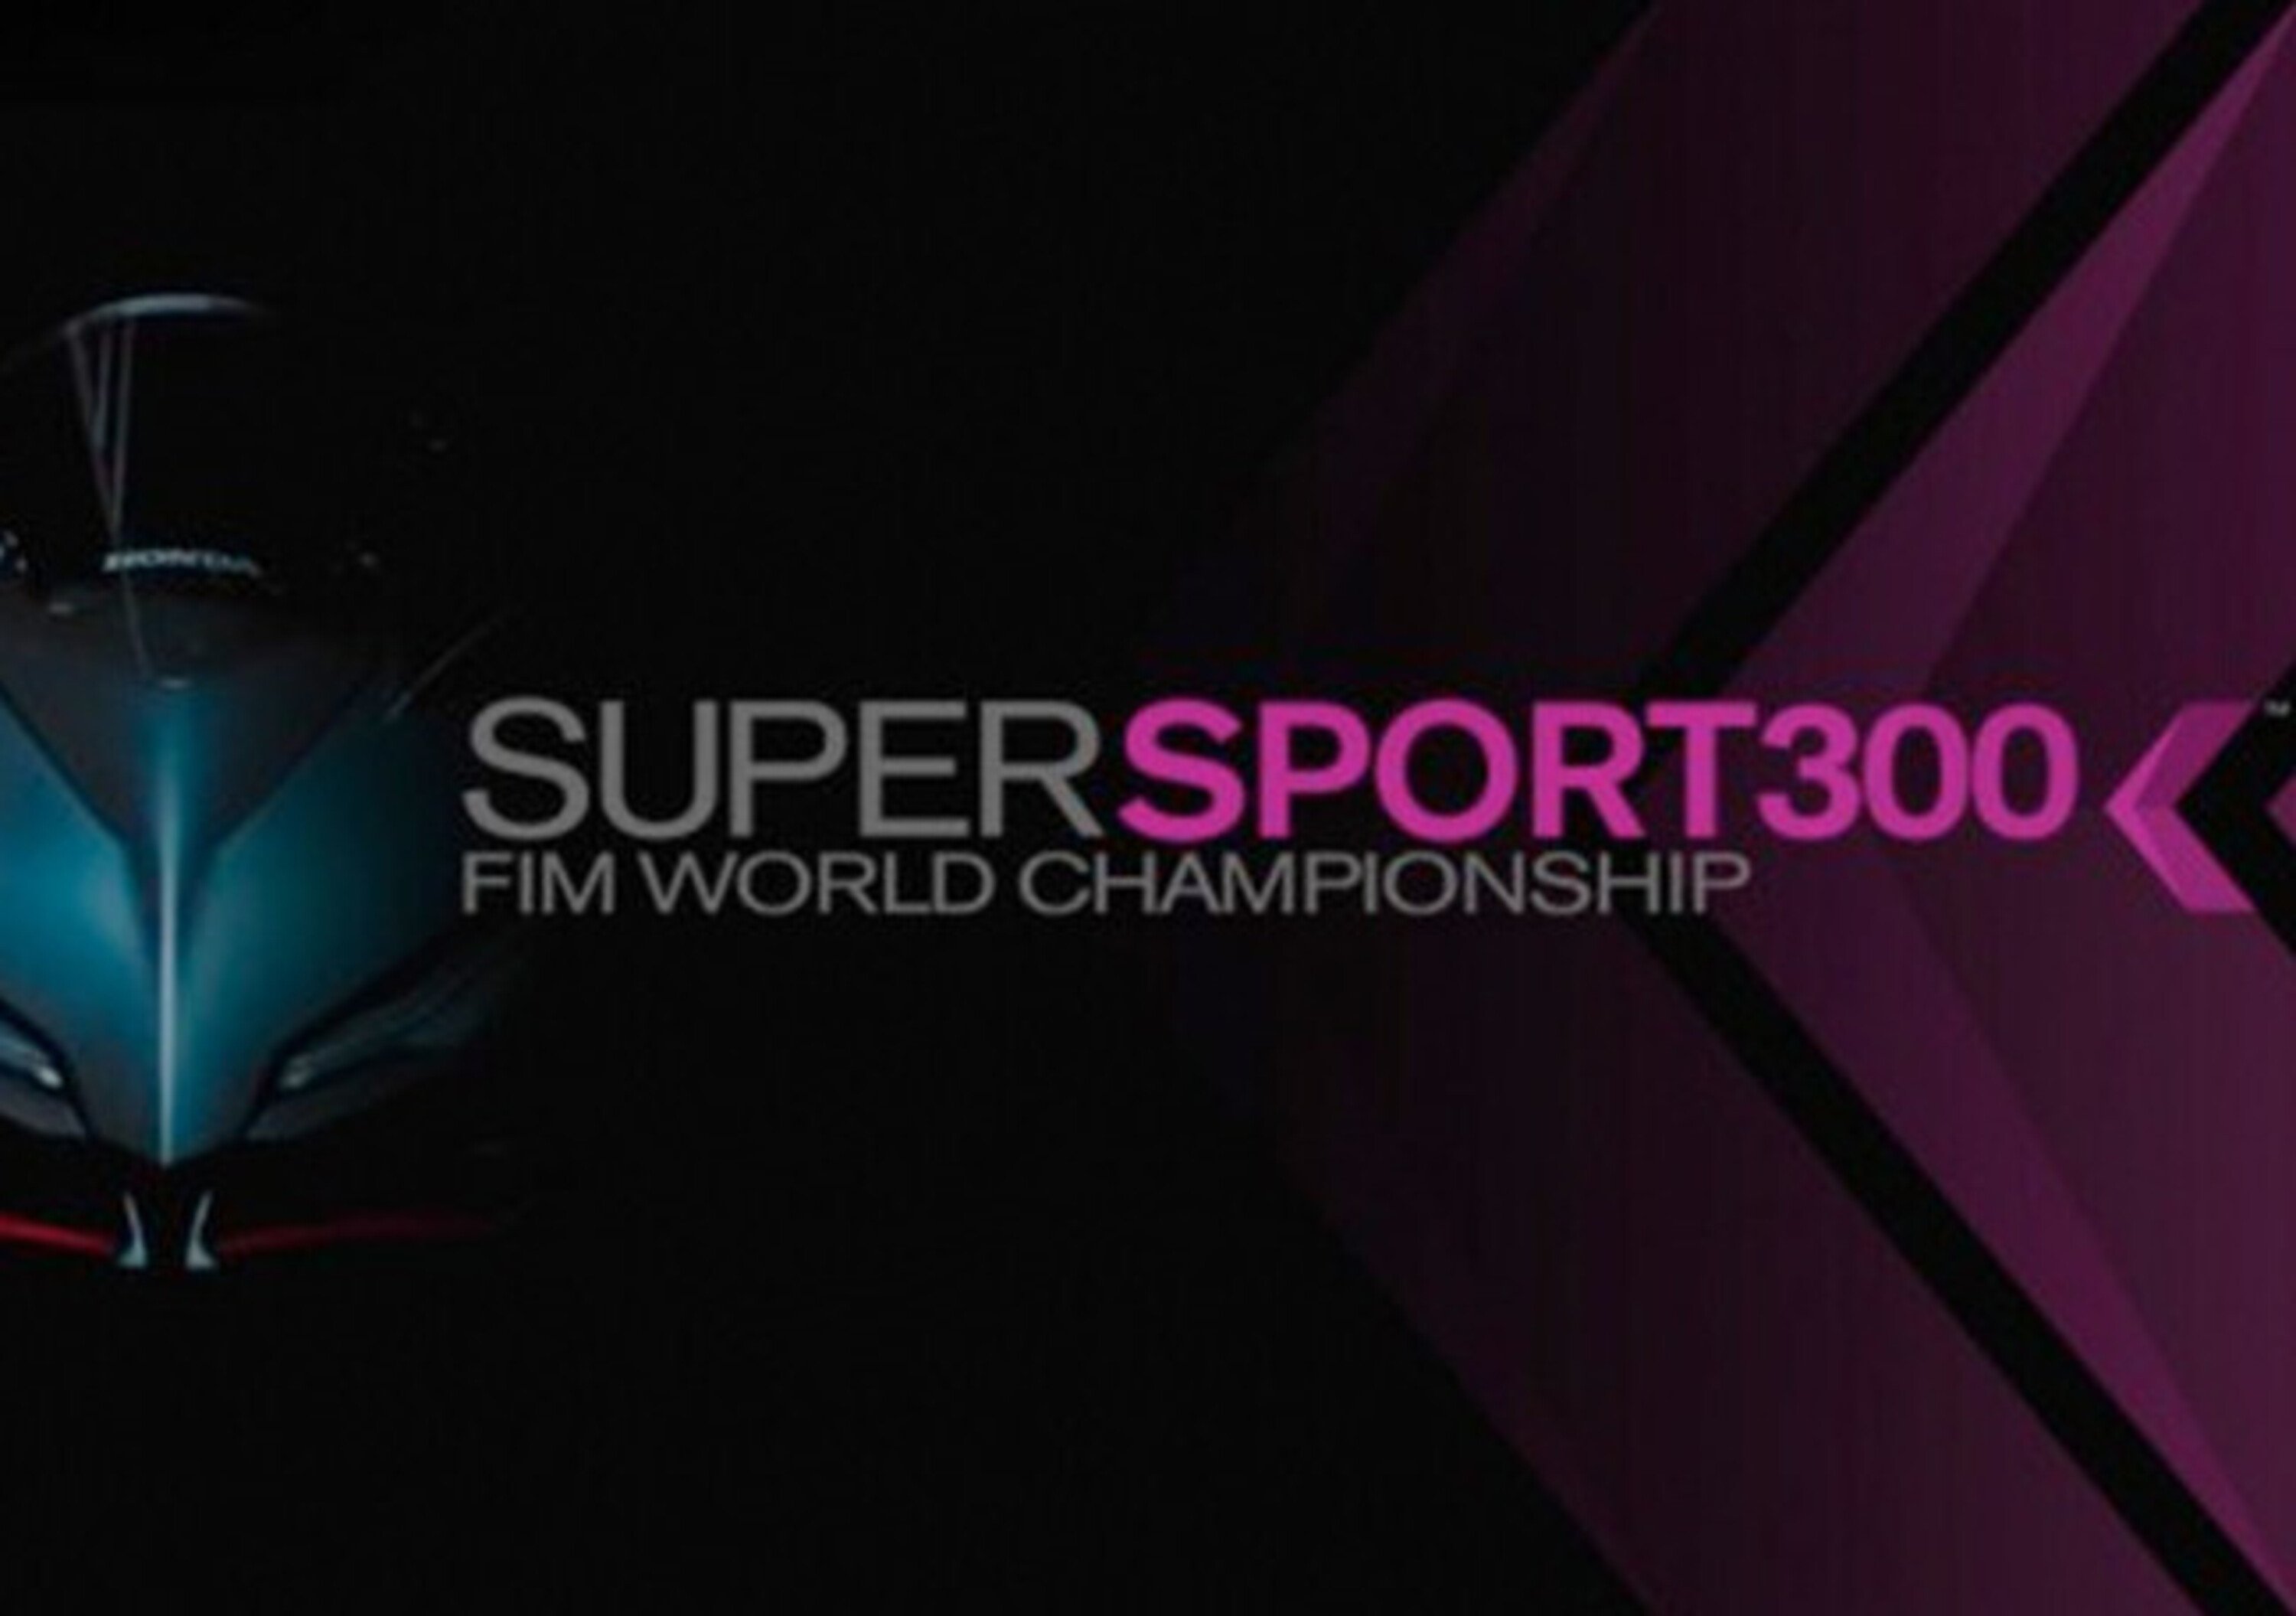 Mondiale Supersport 300 2017: la nuova classe, i piloti e le moto